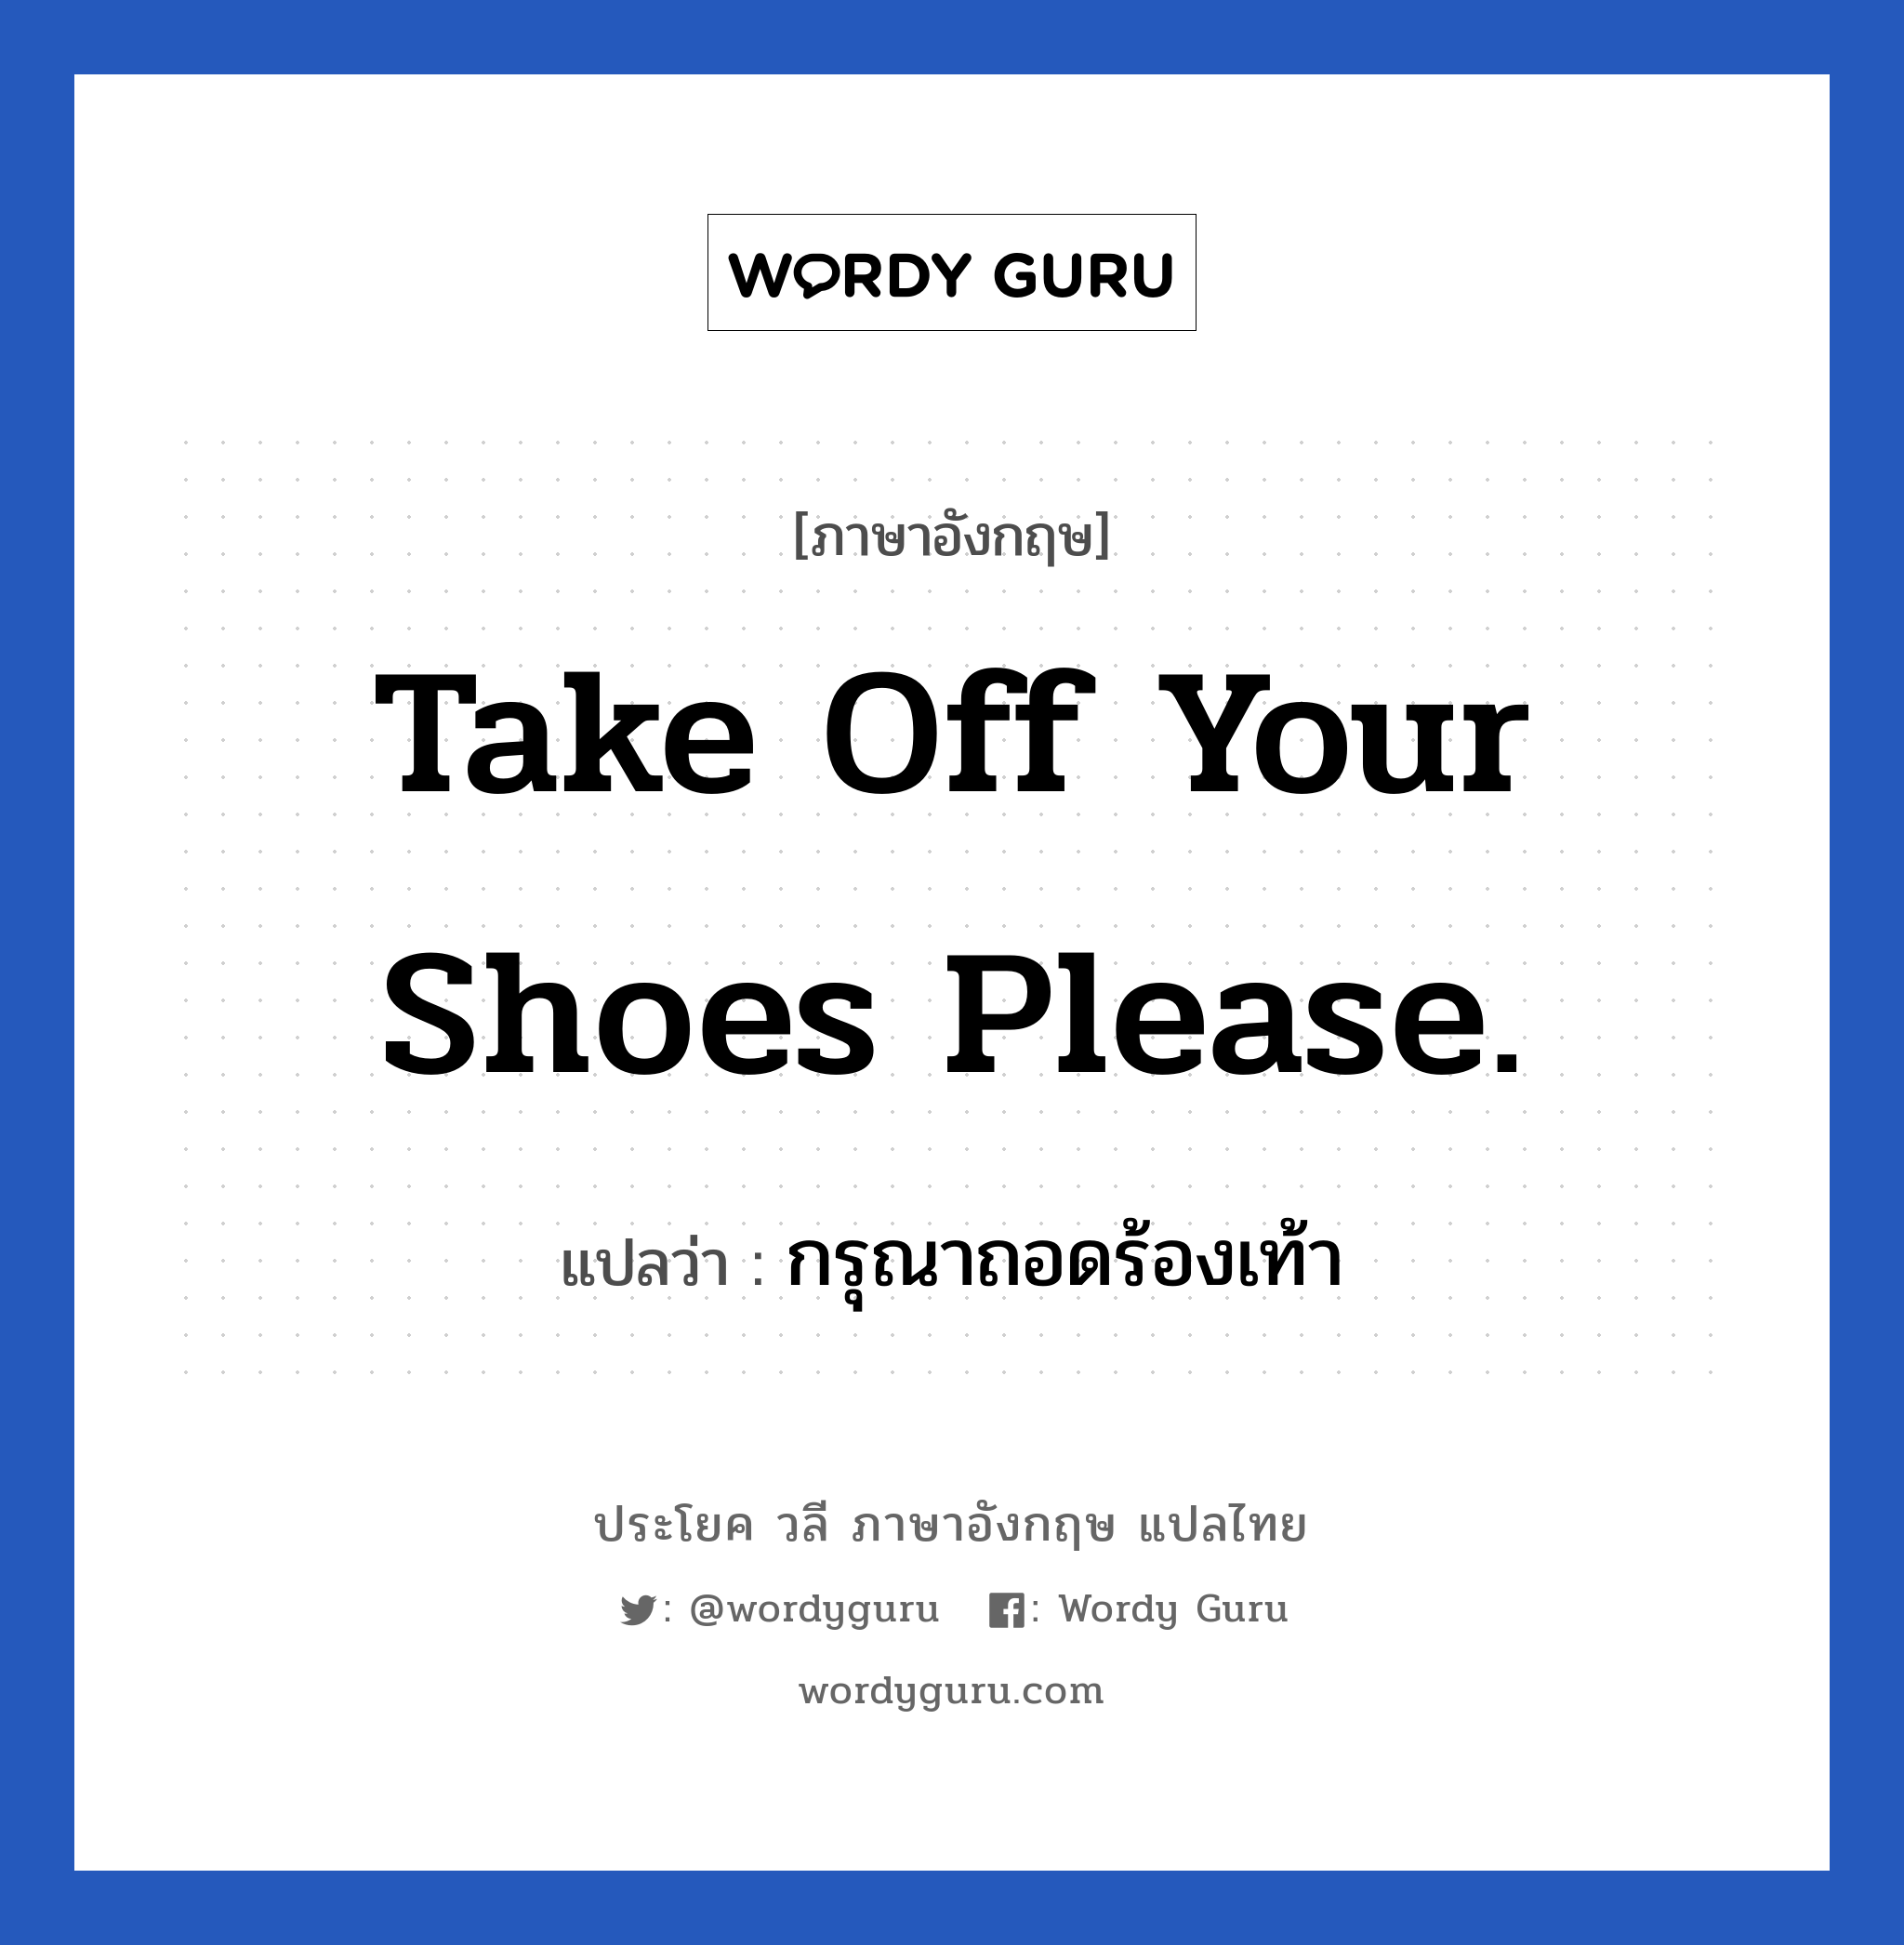 กรุณาถอดร้องเท้า ภาษาอังกฤษ?, วลีภาษาอังกฤษ กรุณาถอดร้องเท้า แปลว่า Take off your shoes please.